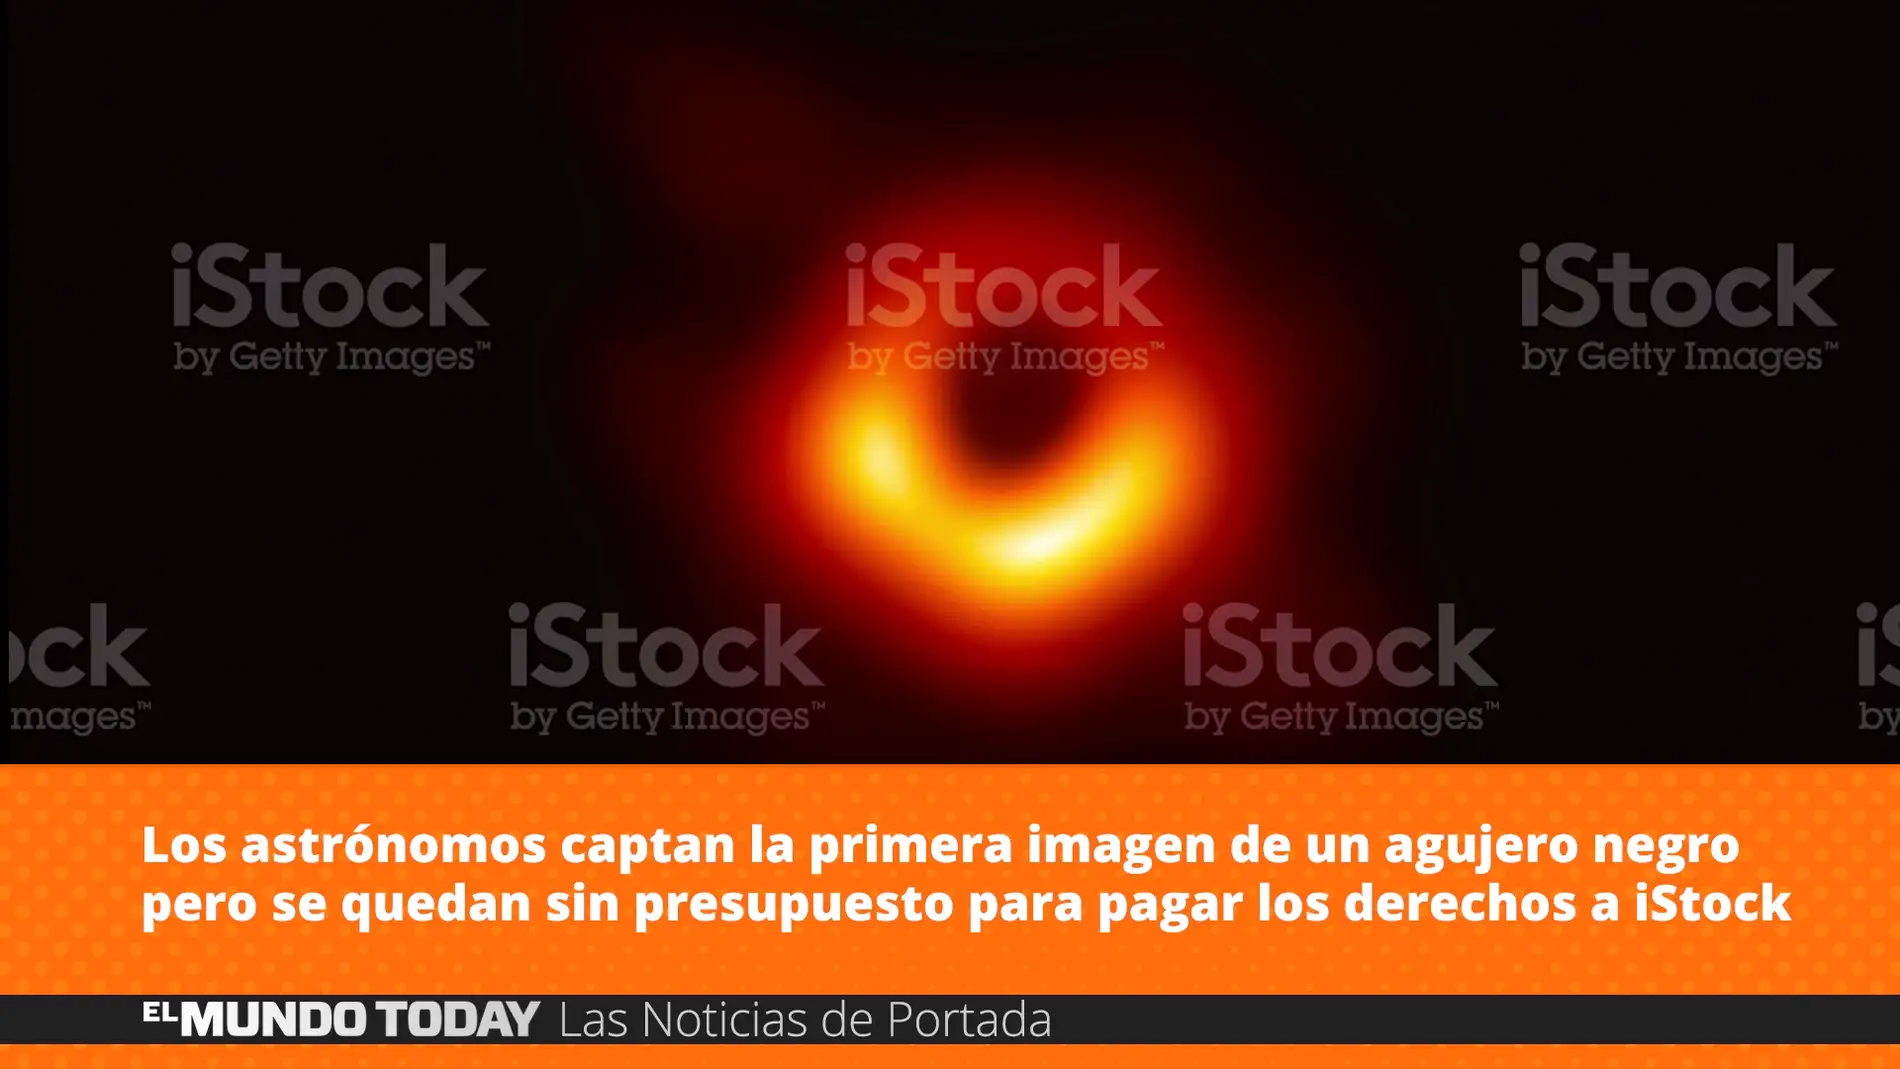 Captan la primera imagen de un agujero negro